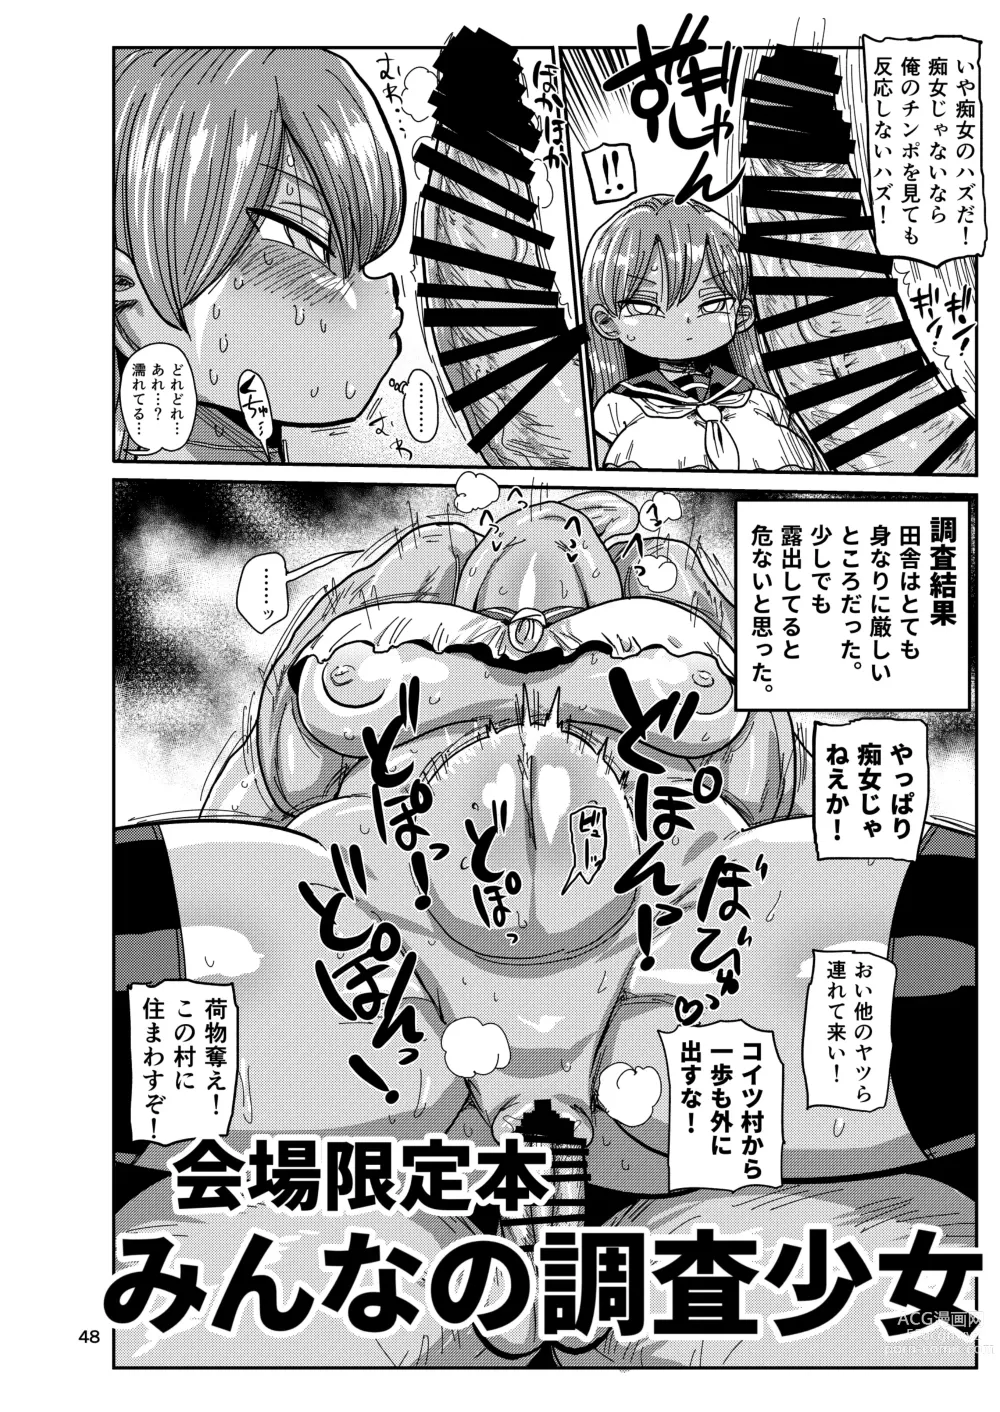 Page 47 of doujinshi Ima made no kaijou gentei hon-tachi matome